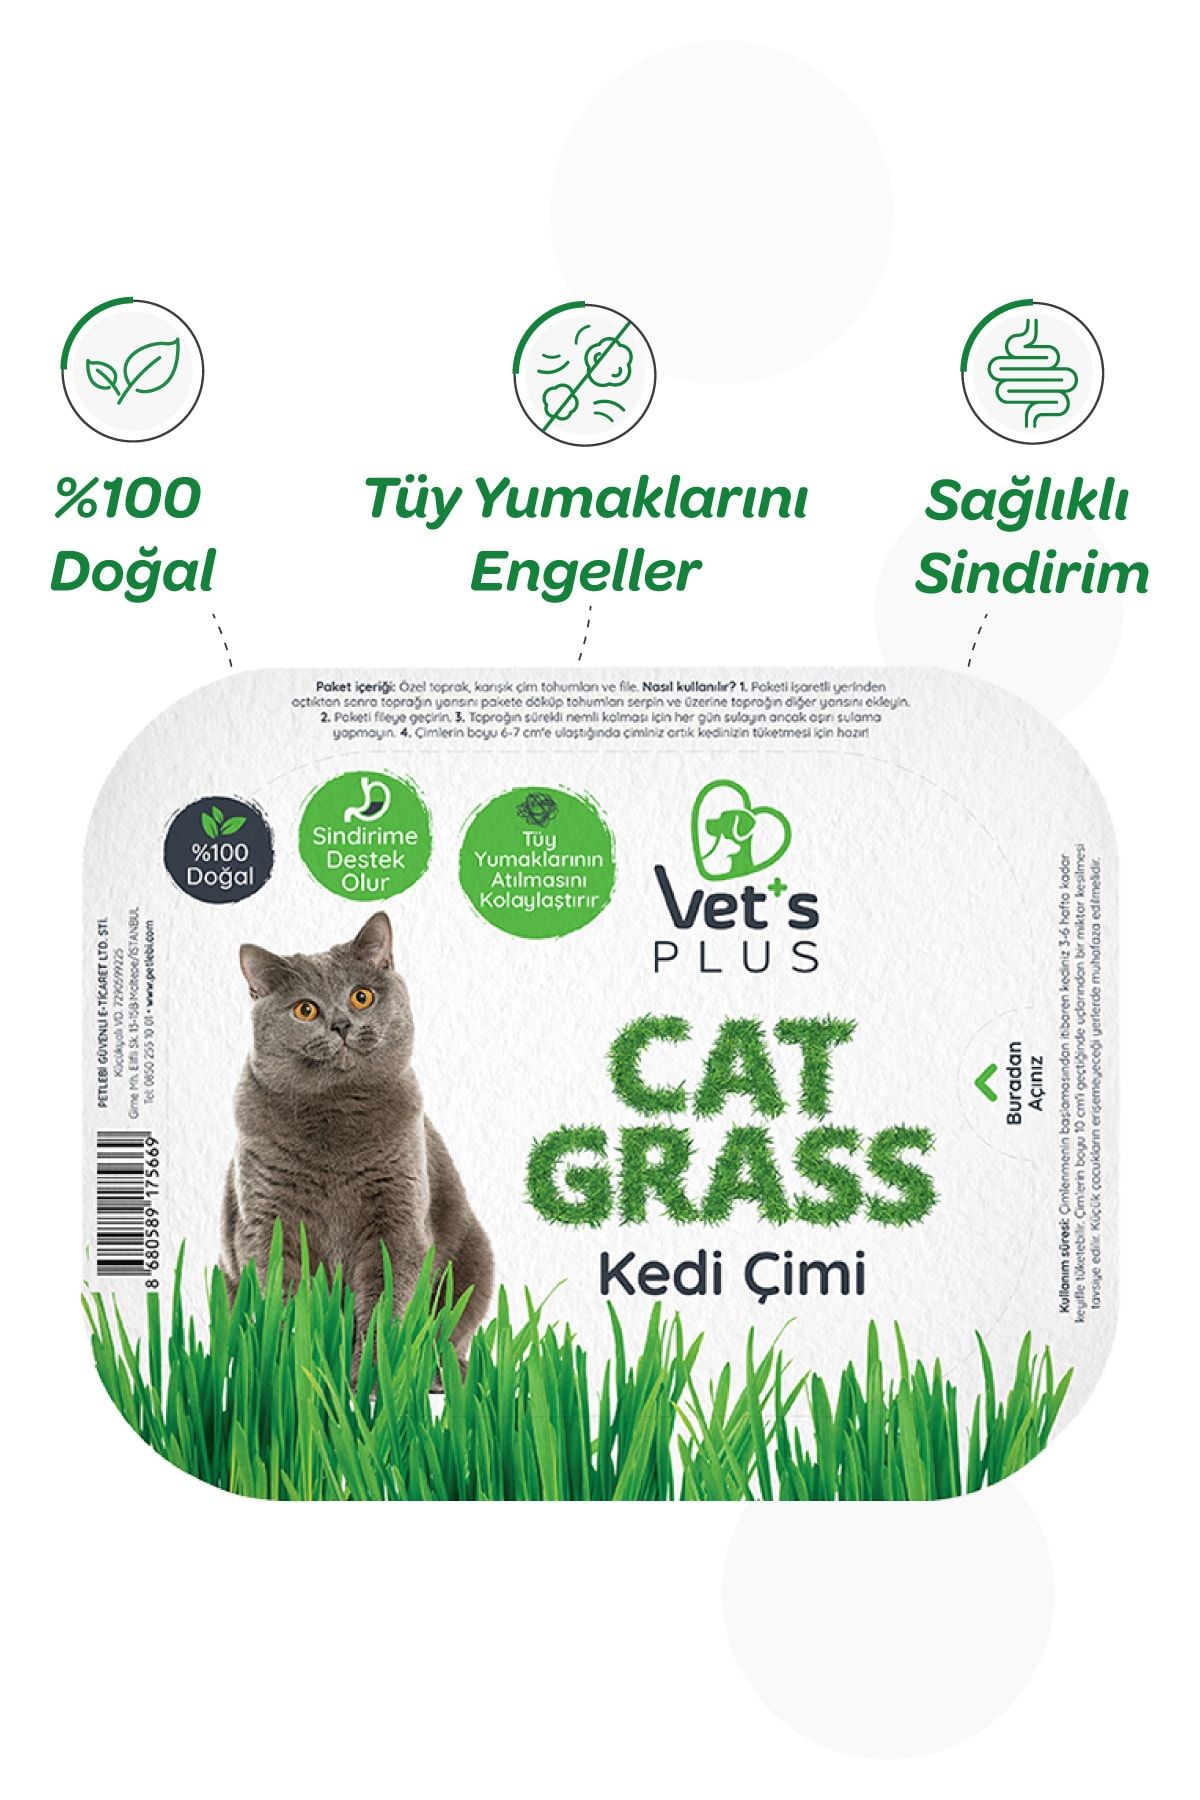 Vet's Plus %100 Doğal Fileli Kedi Çimi (Tüy Yumağı Önleyici)